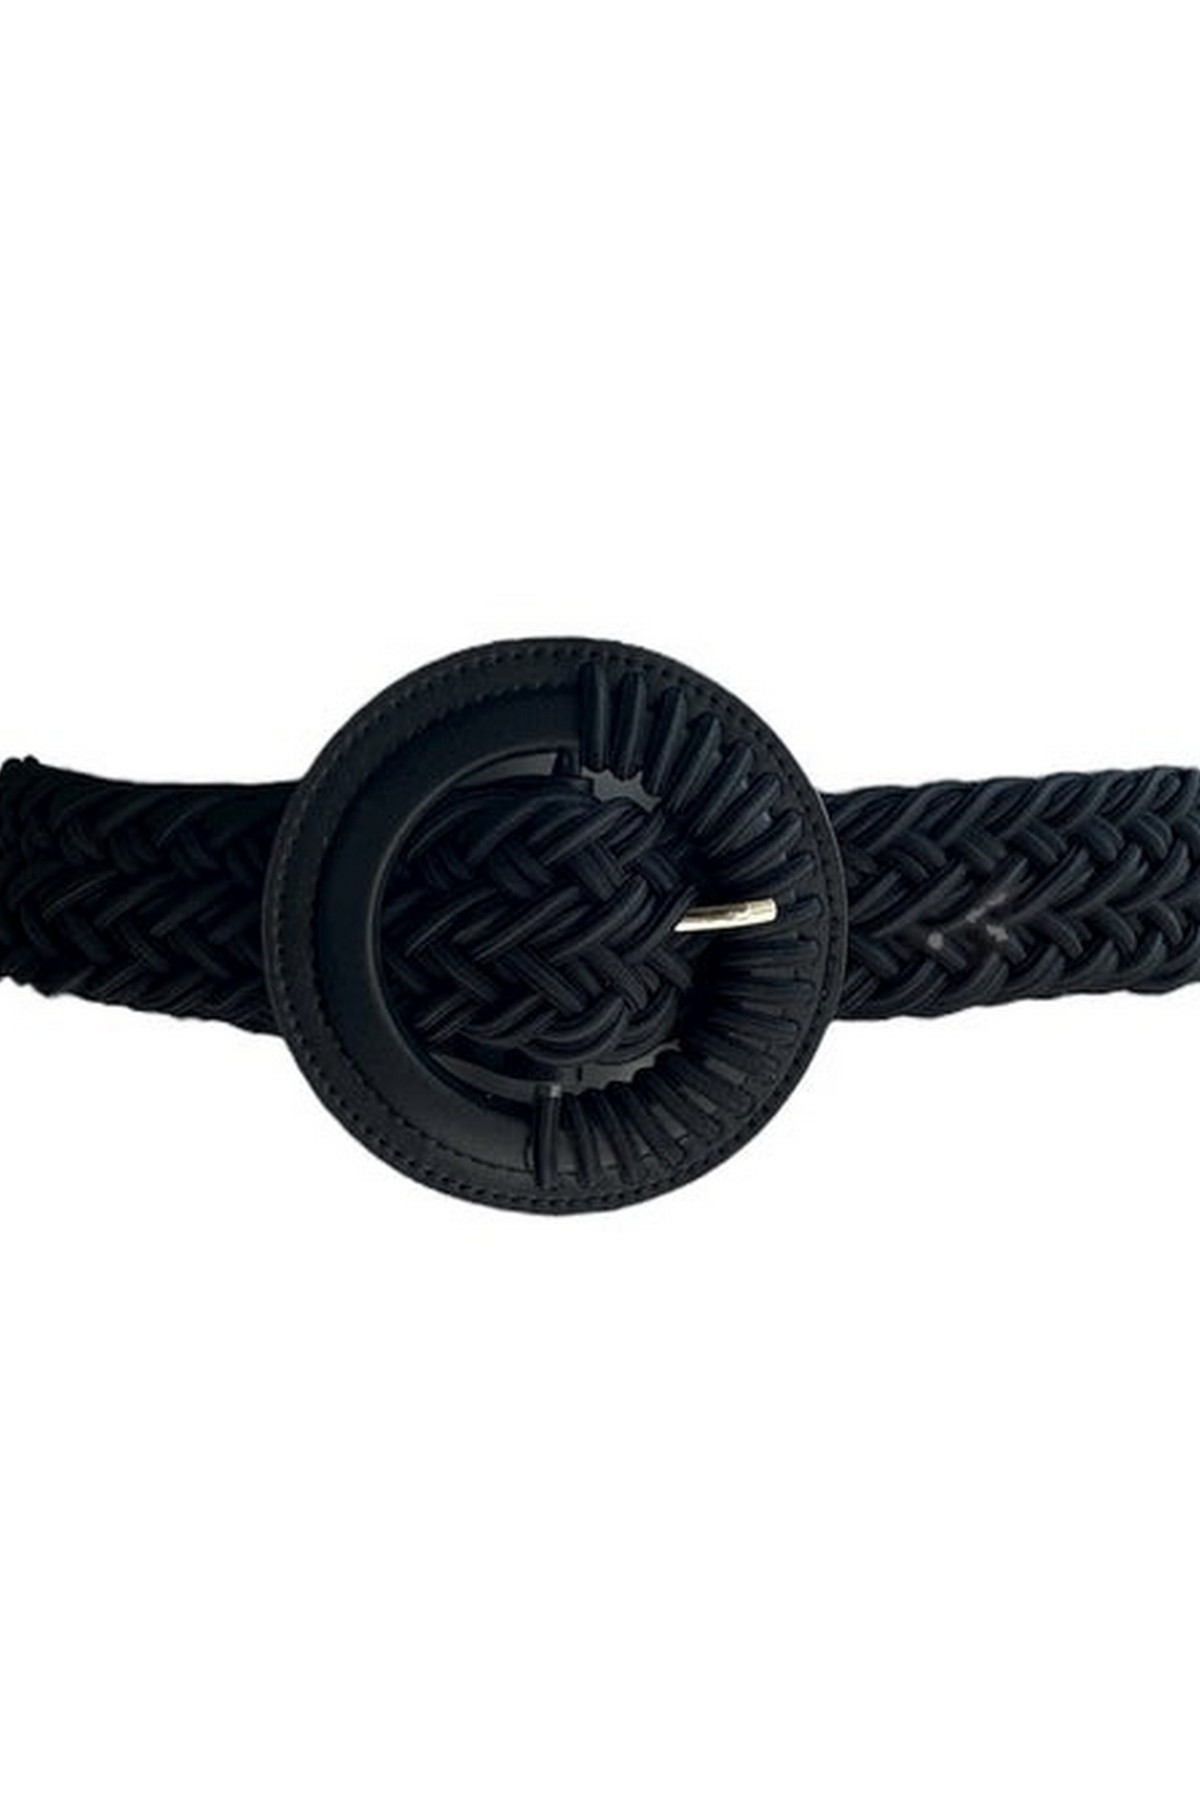 Oscar the collection - Georges Belt leather - Riem geweven leder black - uitverkocht